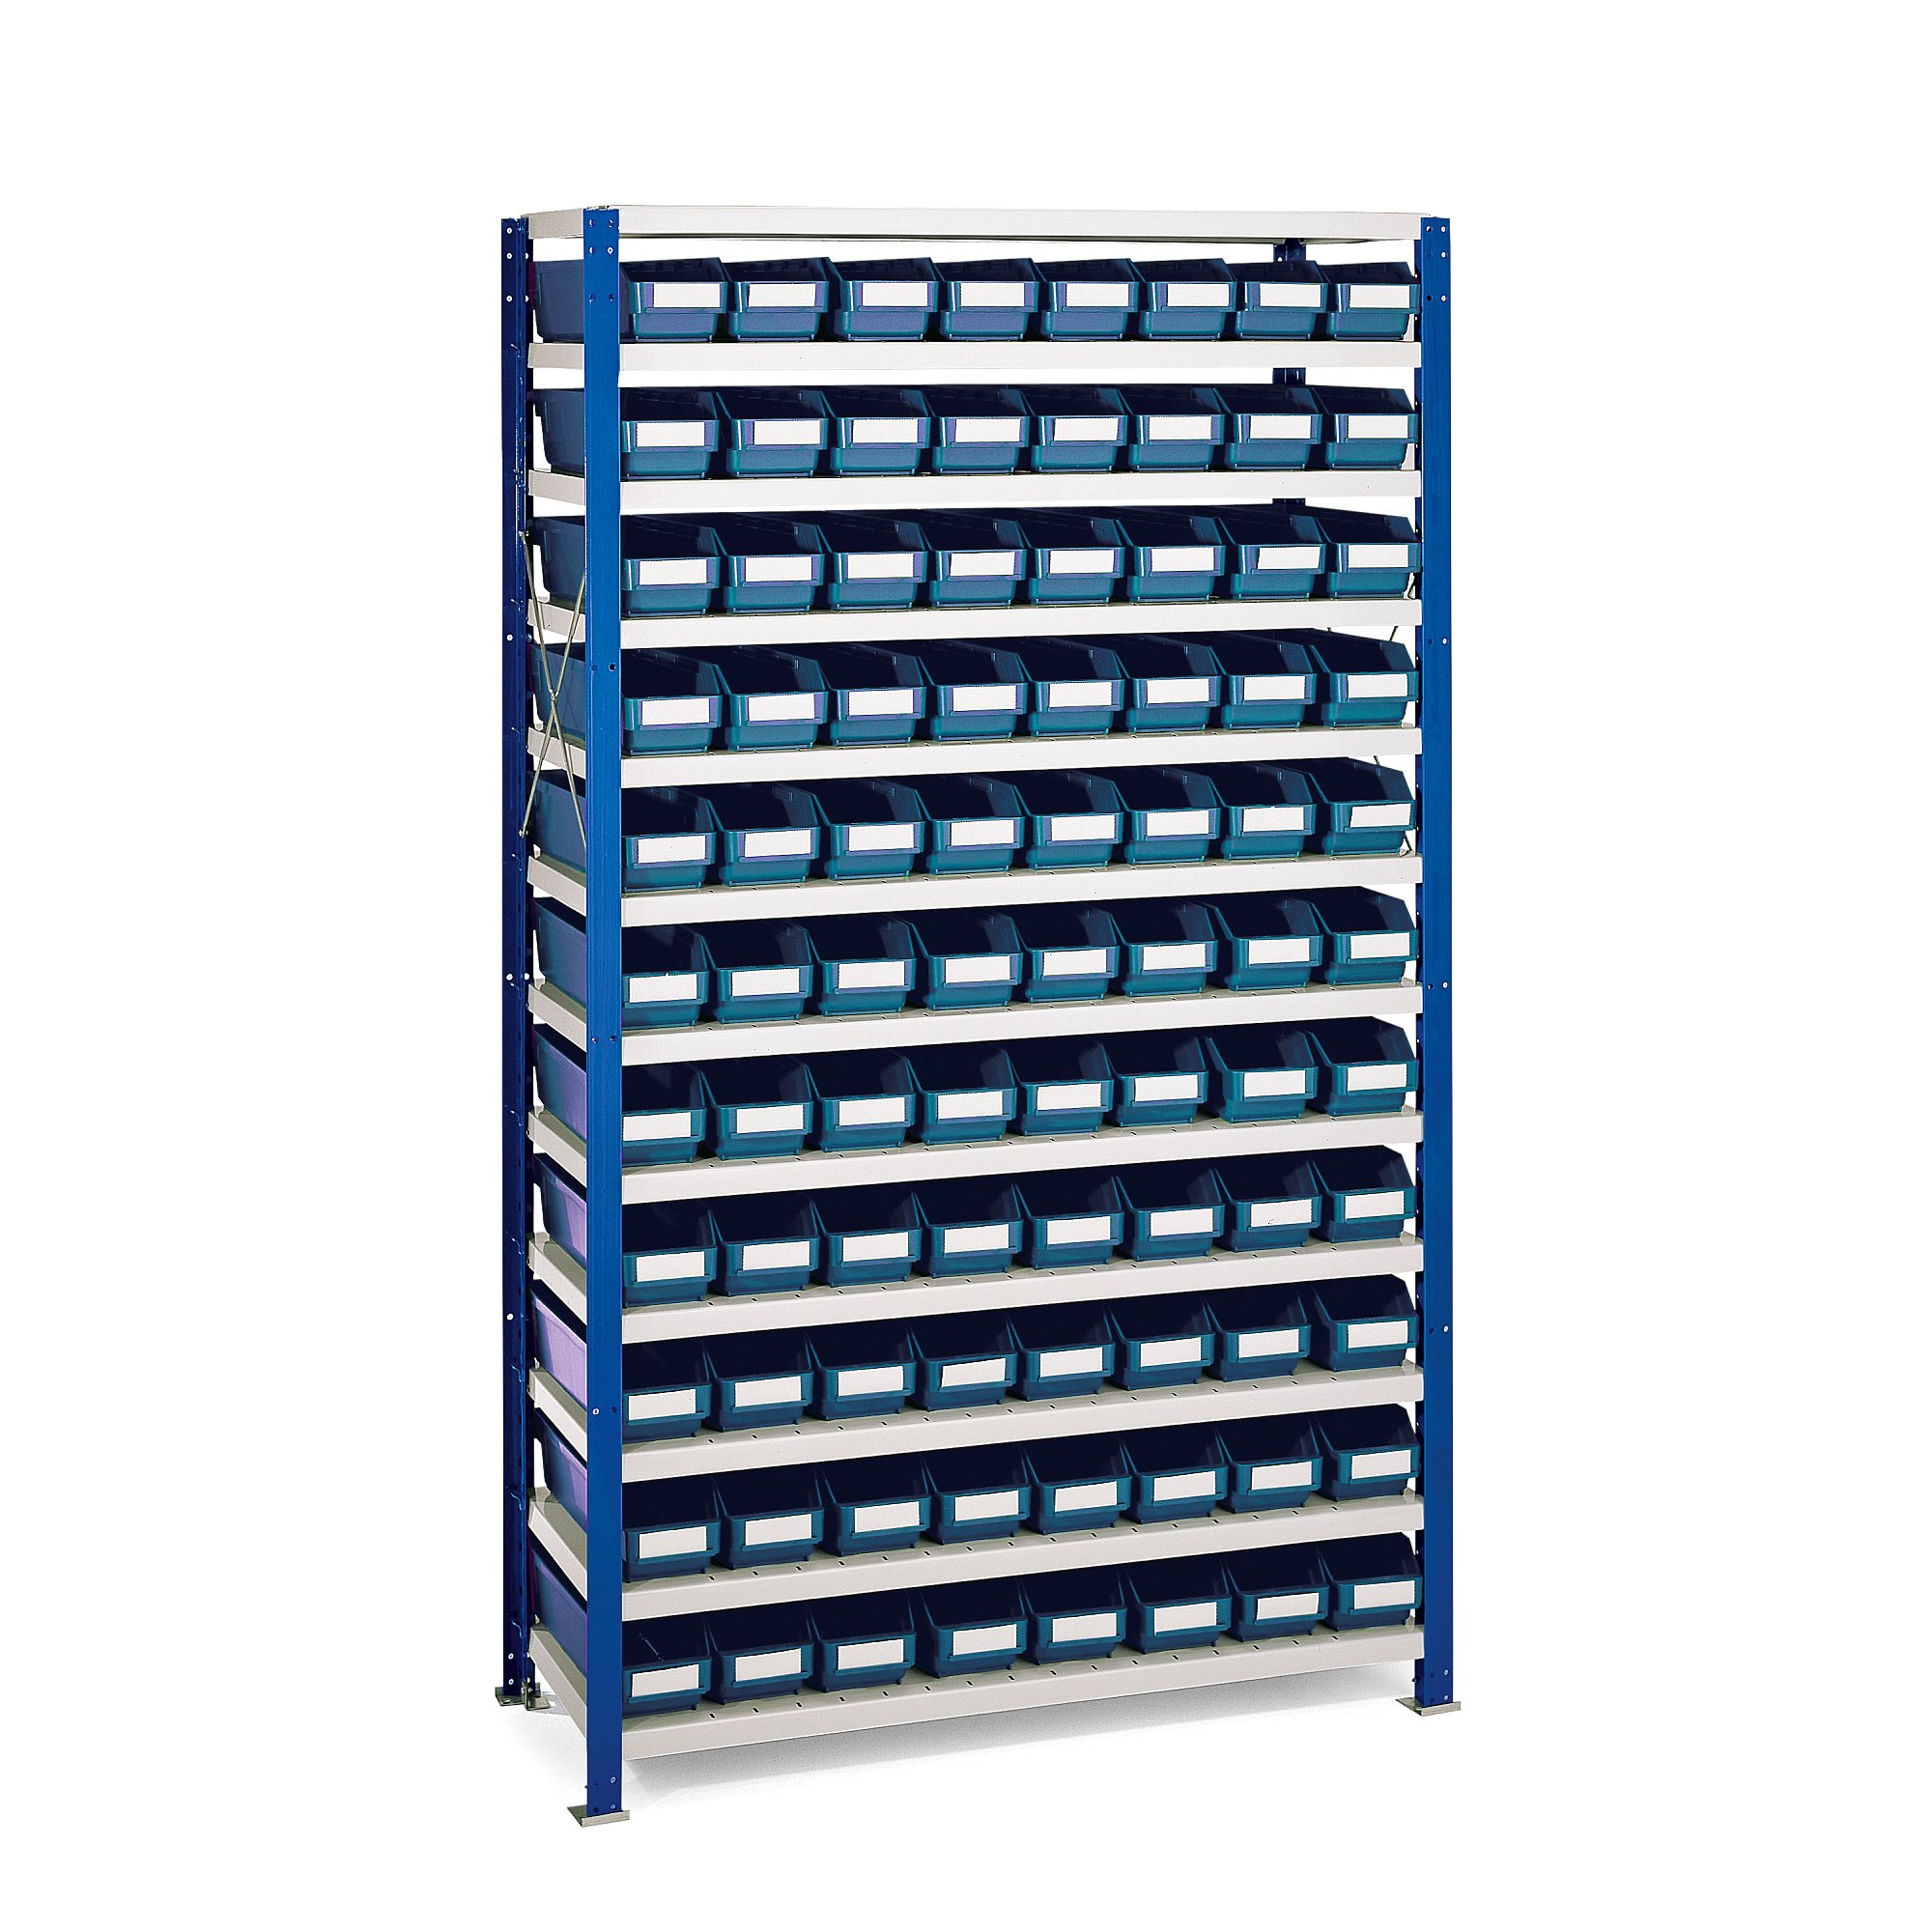 Regál s plastovými boxy REACH + MIX, 1740x1000x400 mm, 88 modrých boxů